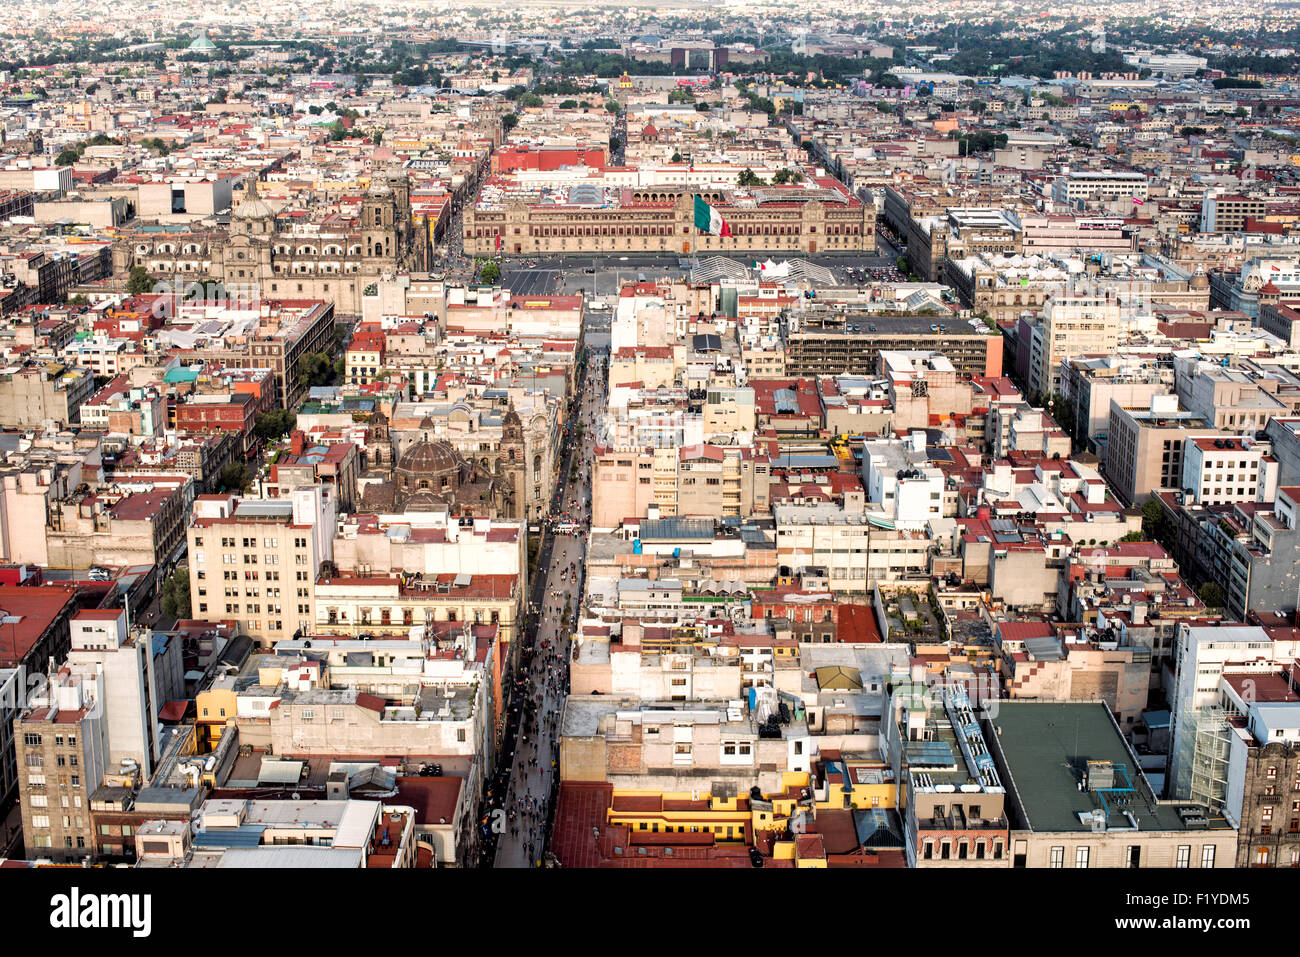 MEXICO, Mexique — vue aérienne de Mexico, présentant le paysage urbain tentaculaire du sommet de la Torre Latinoamericana. Ce gratte-ciel emblématique, autrefois le plus haut d'Amérique latine, offre des perspectives inégalées sur l'étendue vaste et la grille urbaine complexe de la ville. Banque D'Images